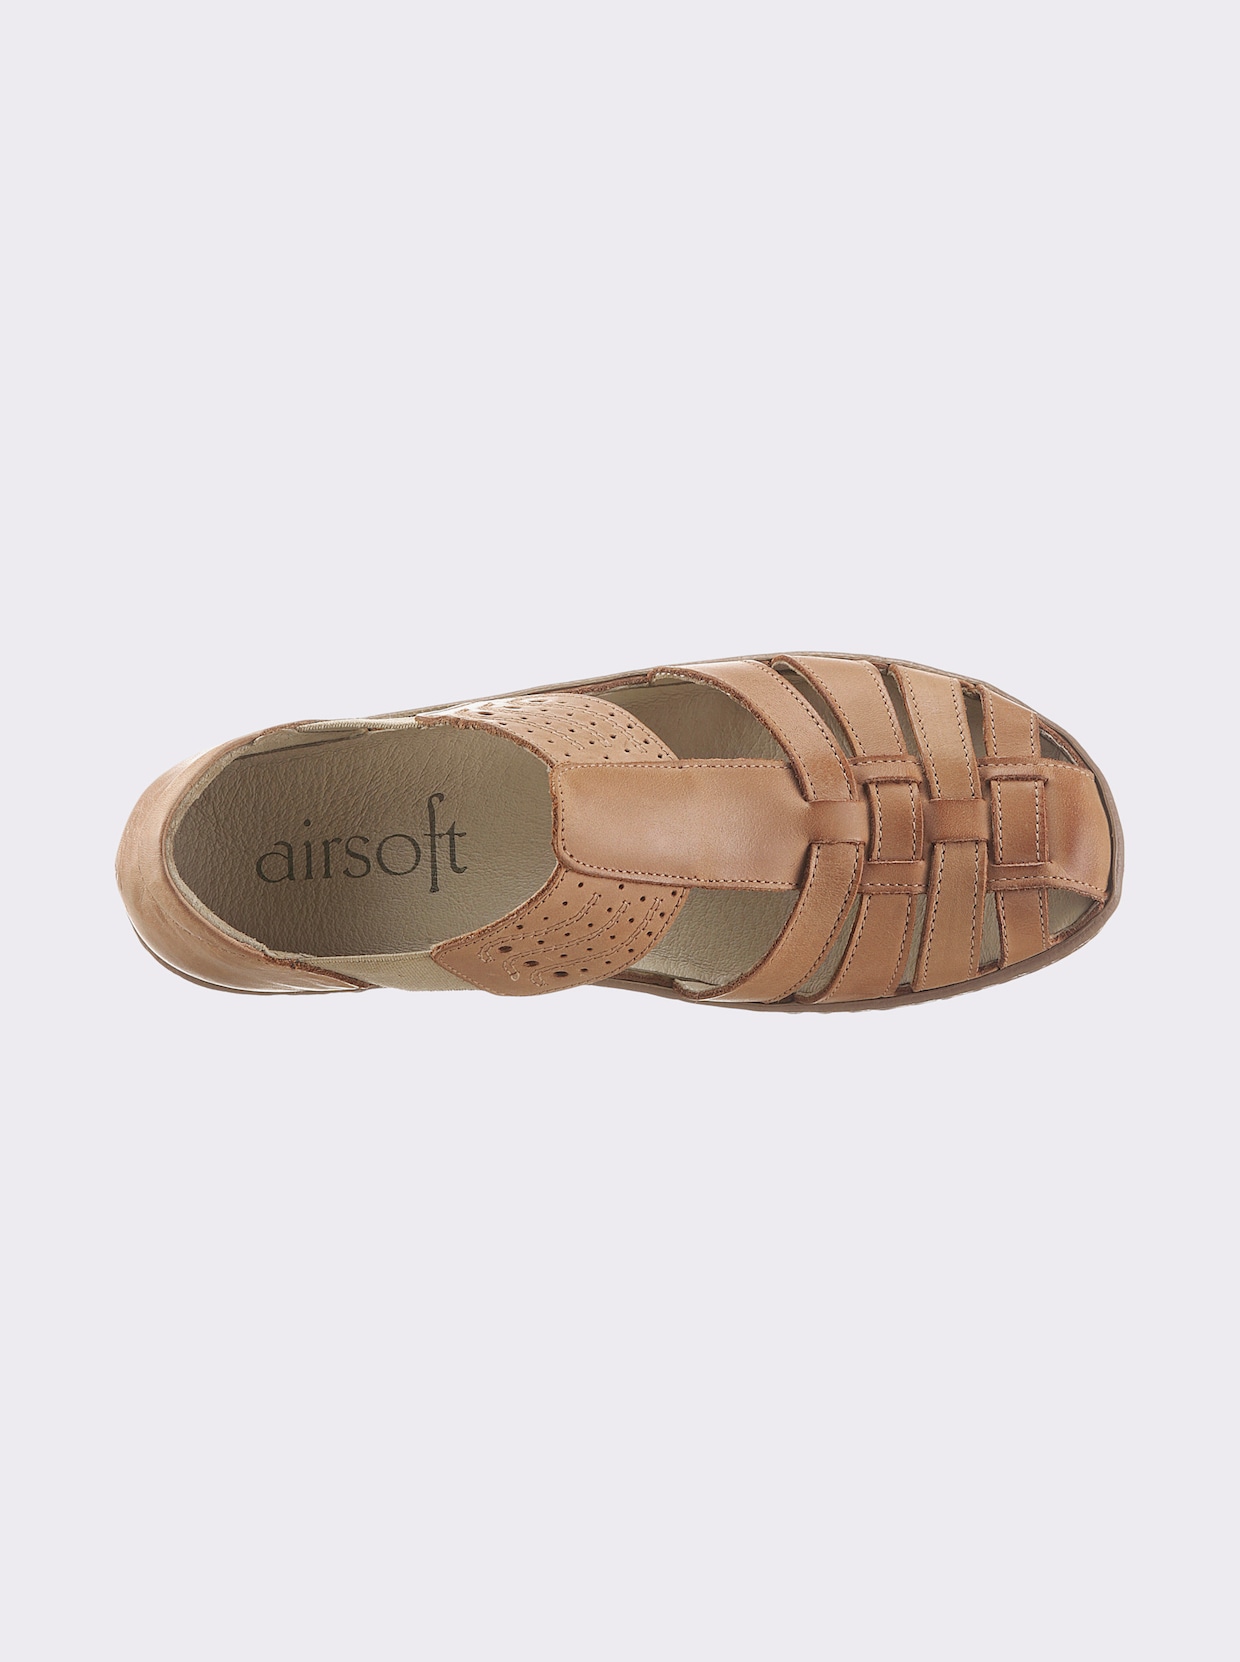 airsoft modern+ Slipper - braun